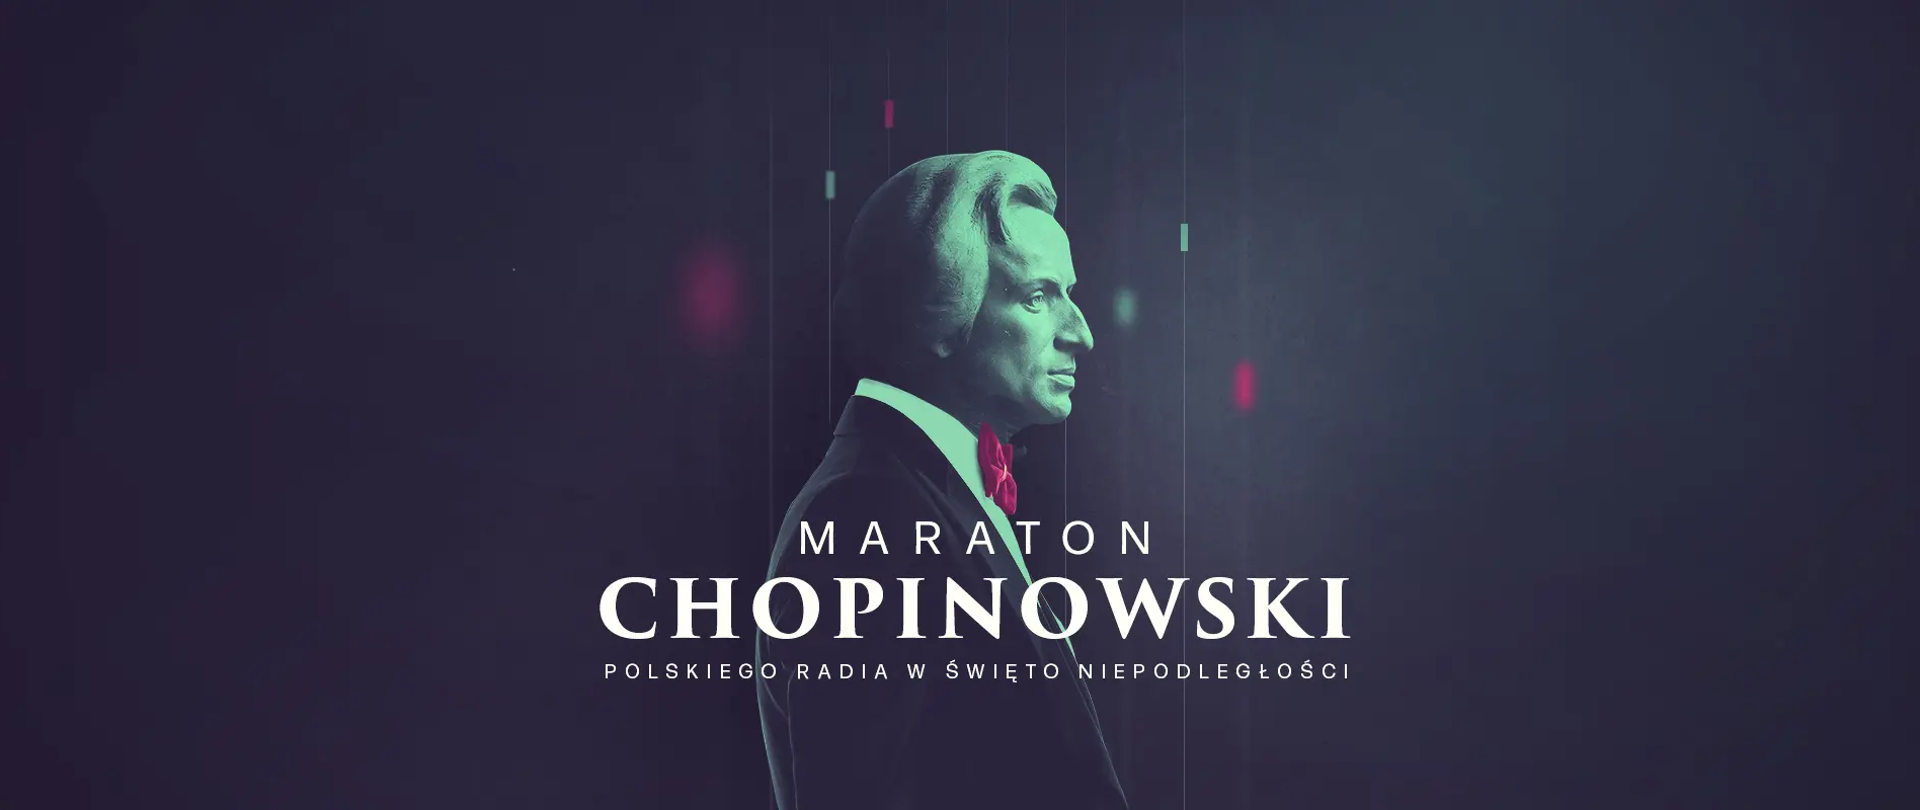 Maraton Chopinowski w Święto Niepodległości